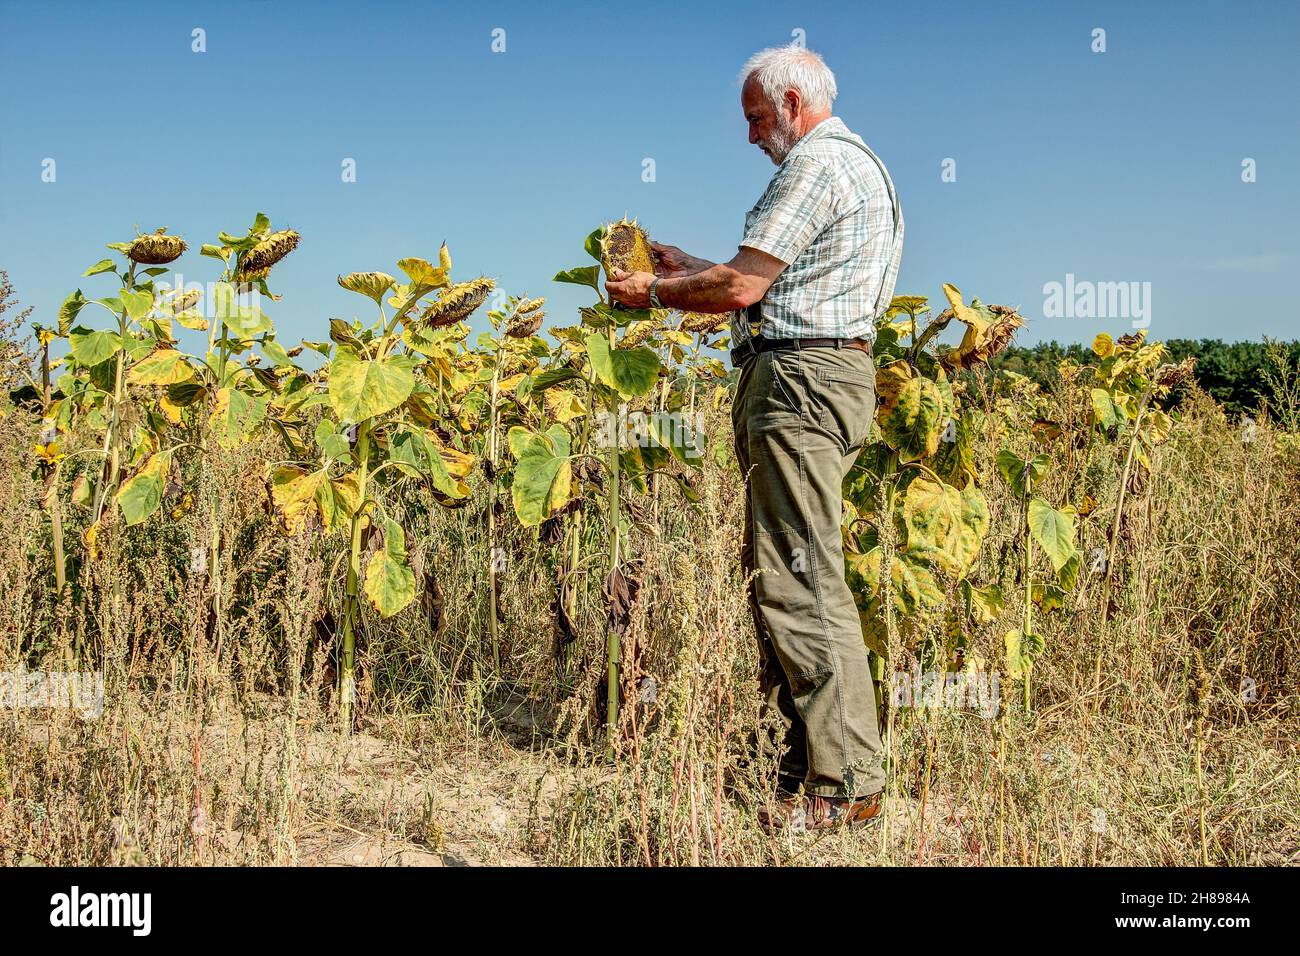 Un vieil agriculteur expérimenté regarde avec véraison les tournesols sur son champ parché.Le changement climatique et l'absence de pluie rendent l'agriculture de plus en plus infondée Banque D'Images